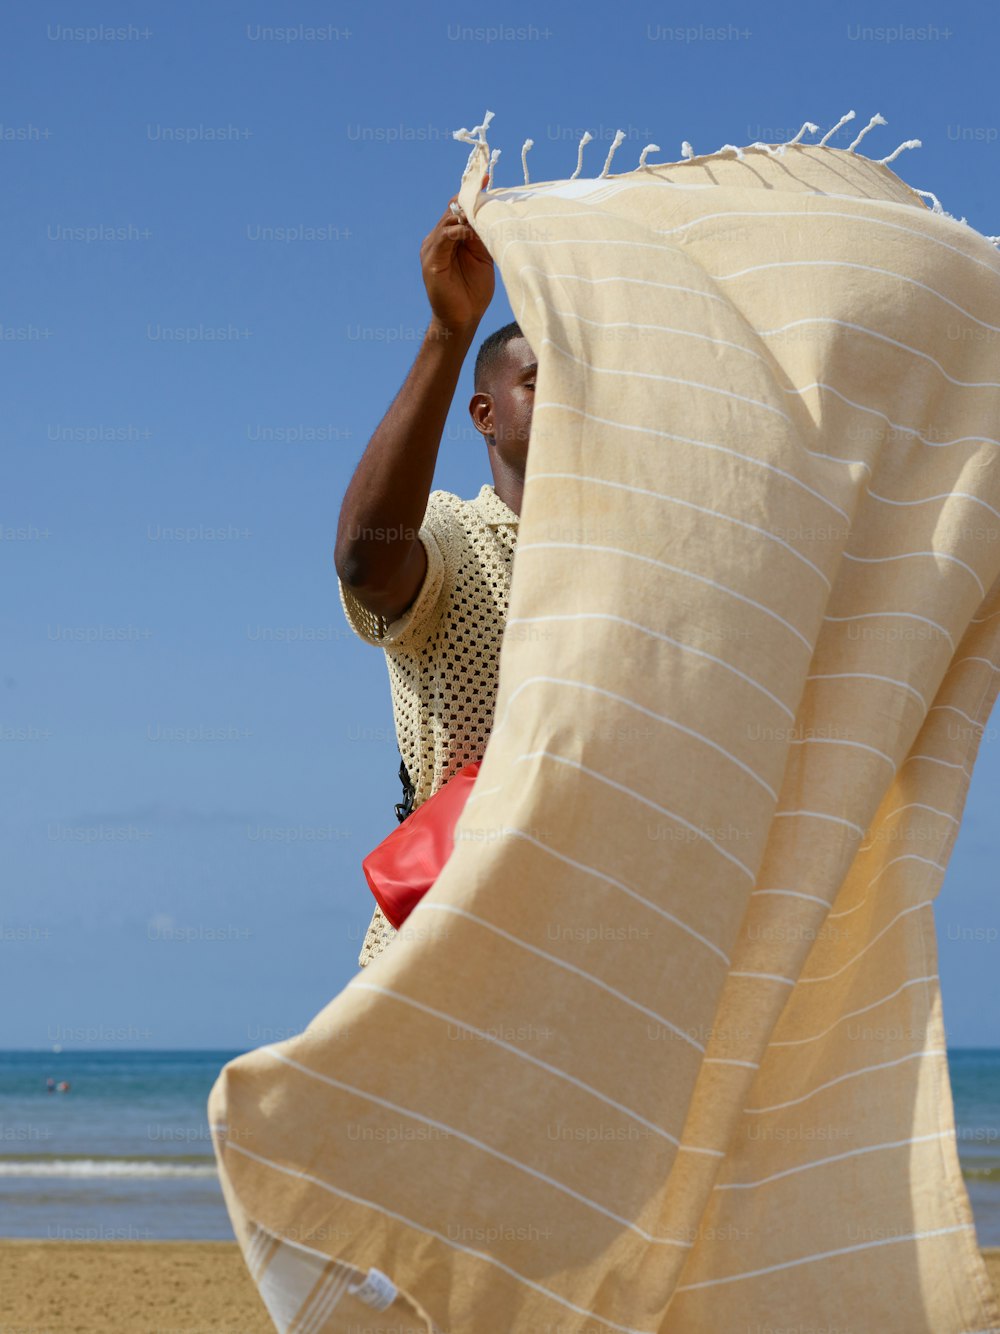 毛布の下で浜辺に立つ男